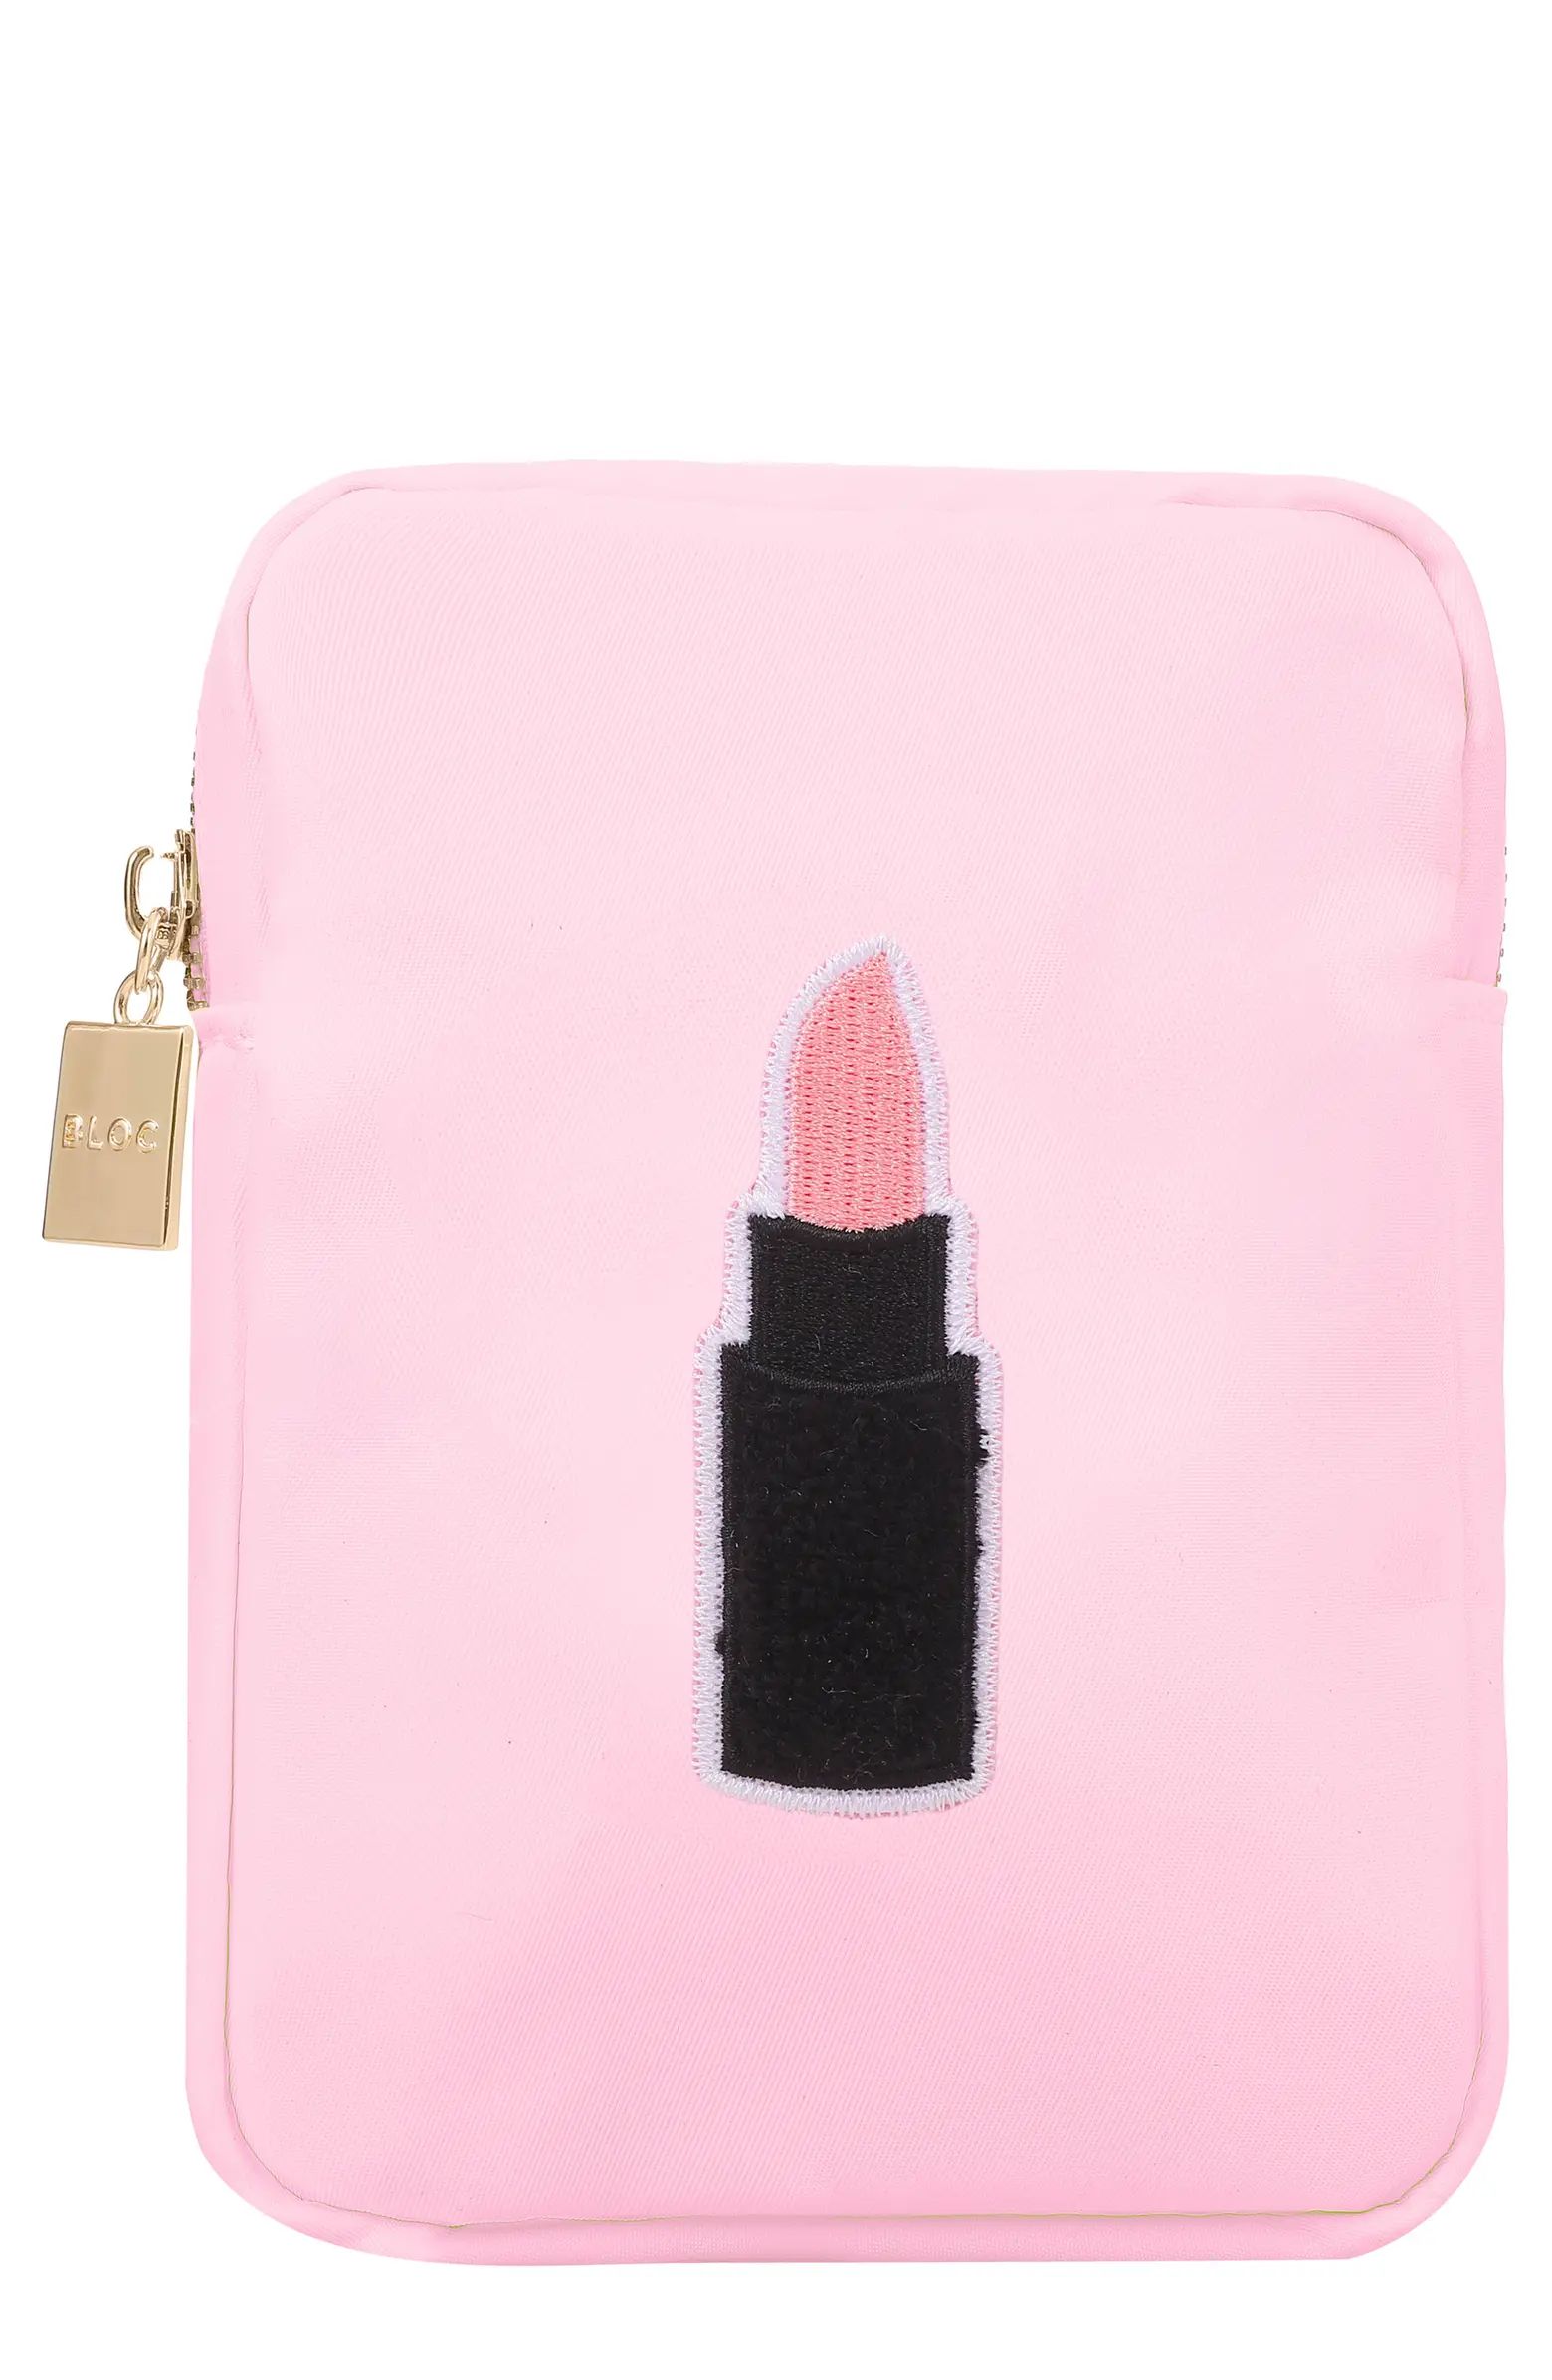 Bloc Bags Mini Lipstick Cosmetics Bag | Nordstrom | Nordstrom